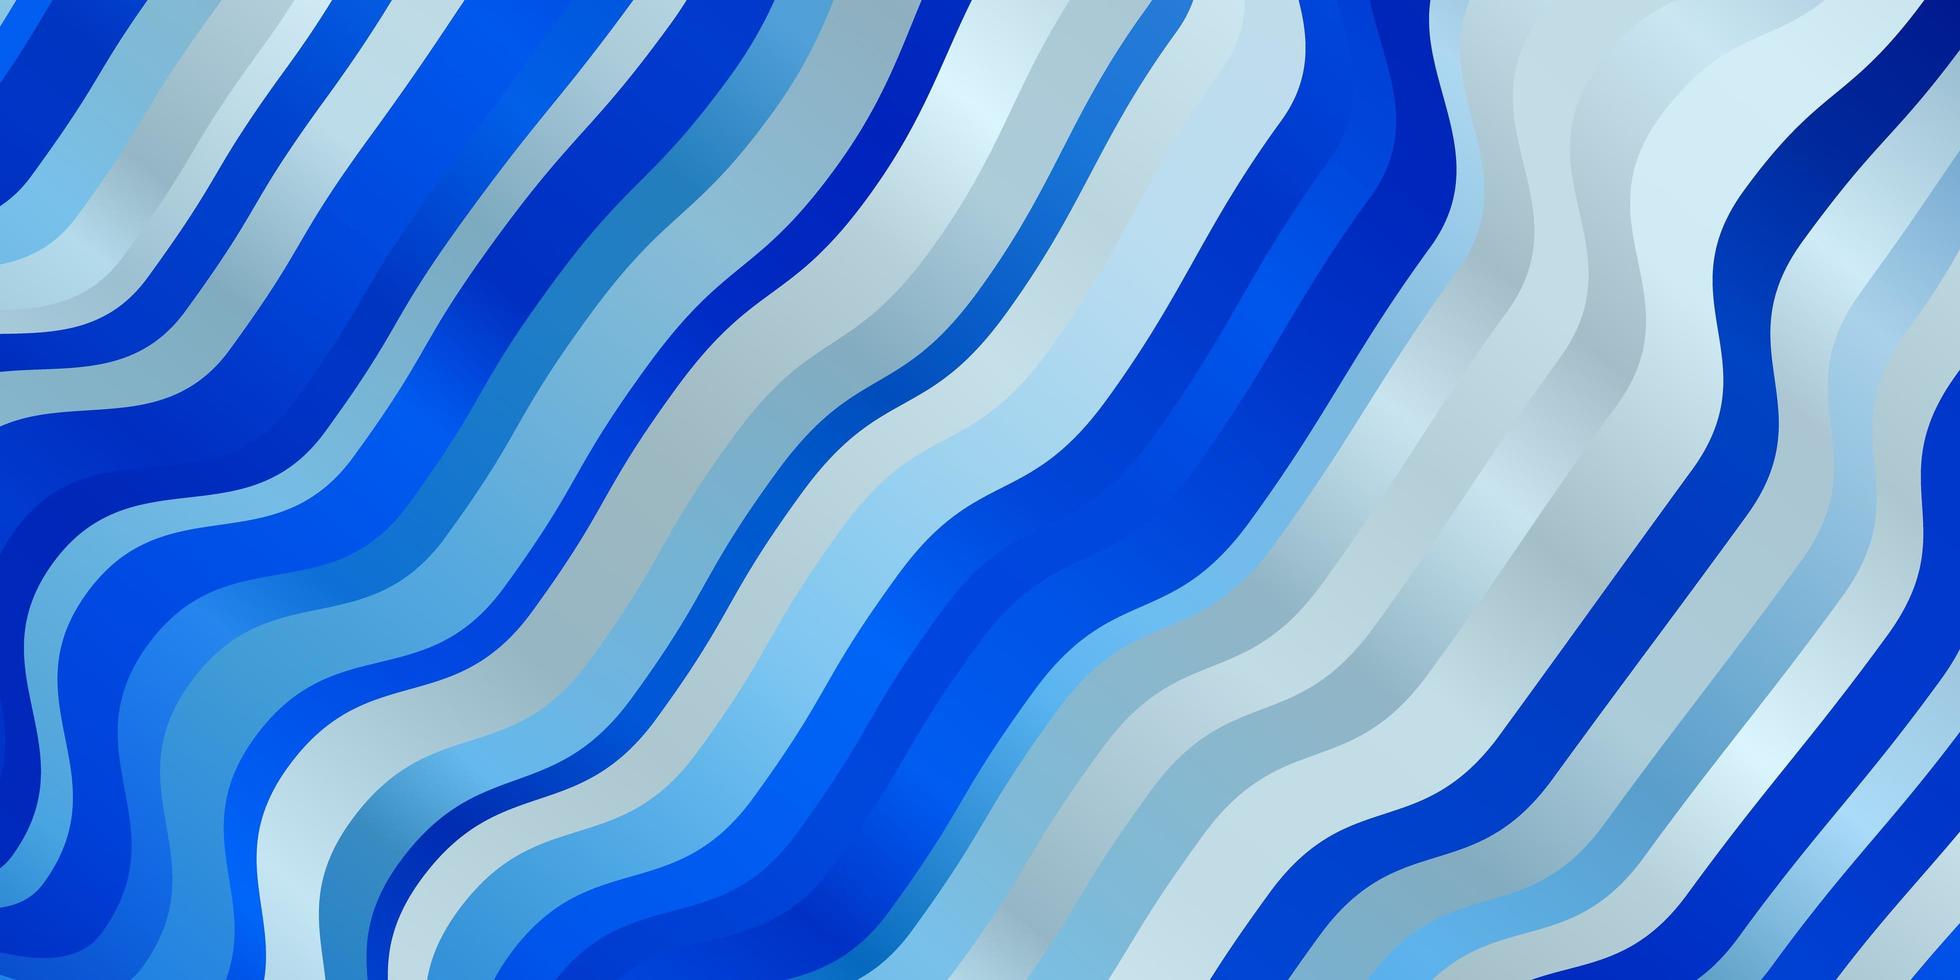 Fondo de vector azul claro con líneas dobladas